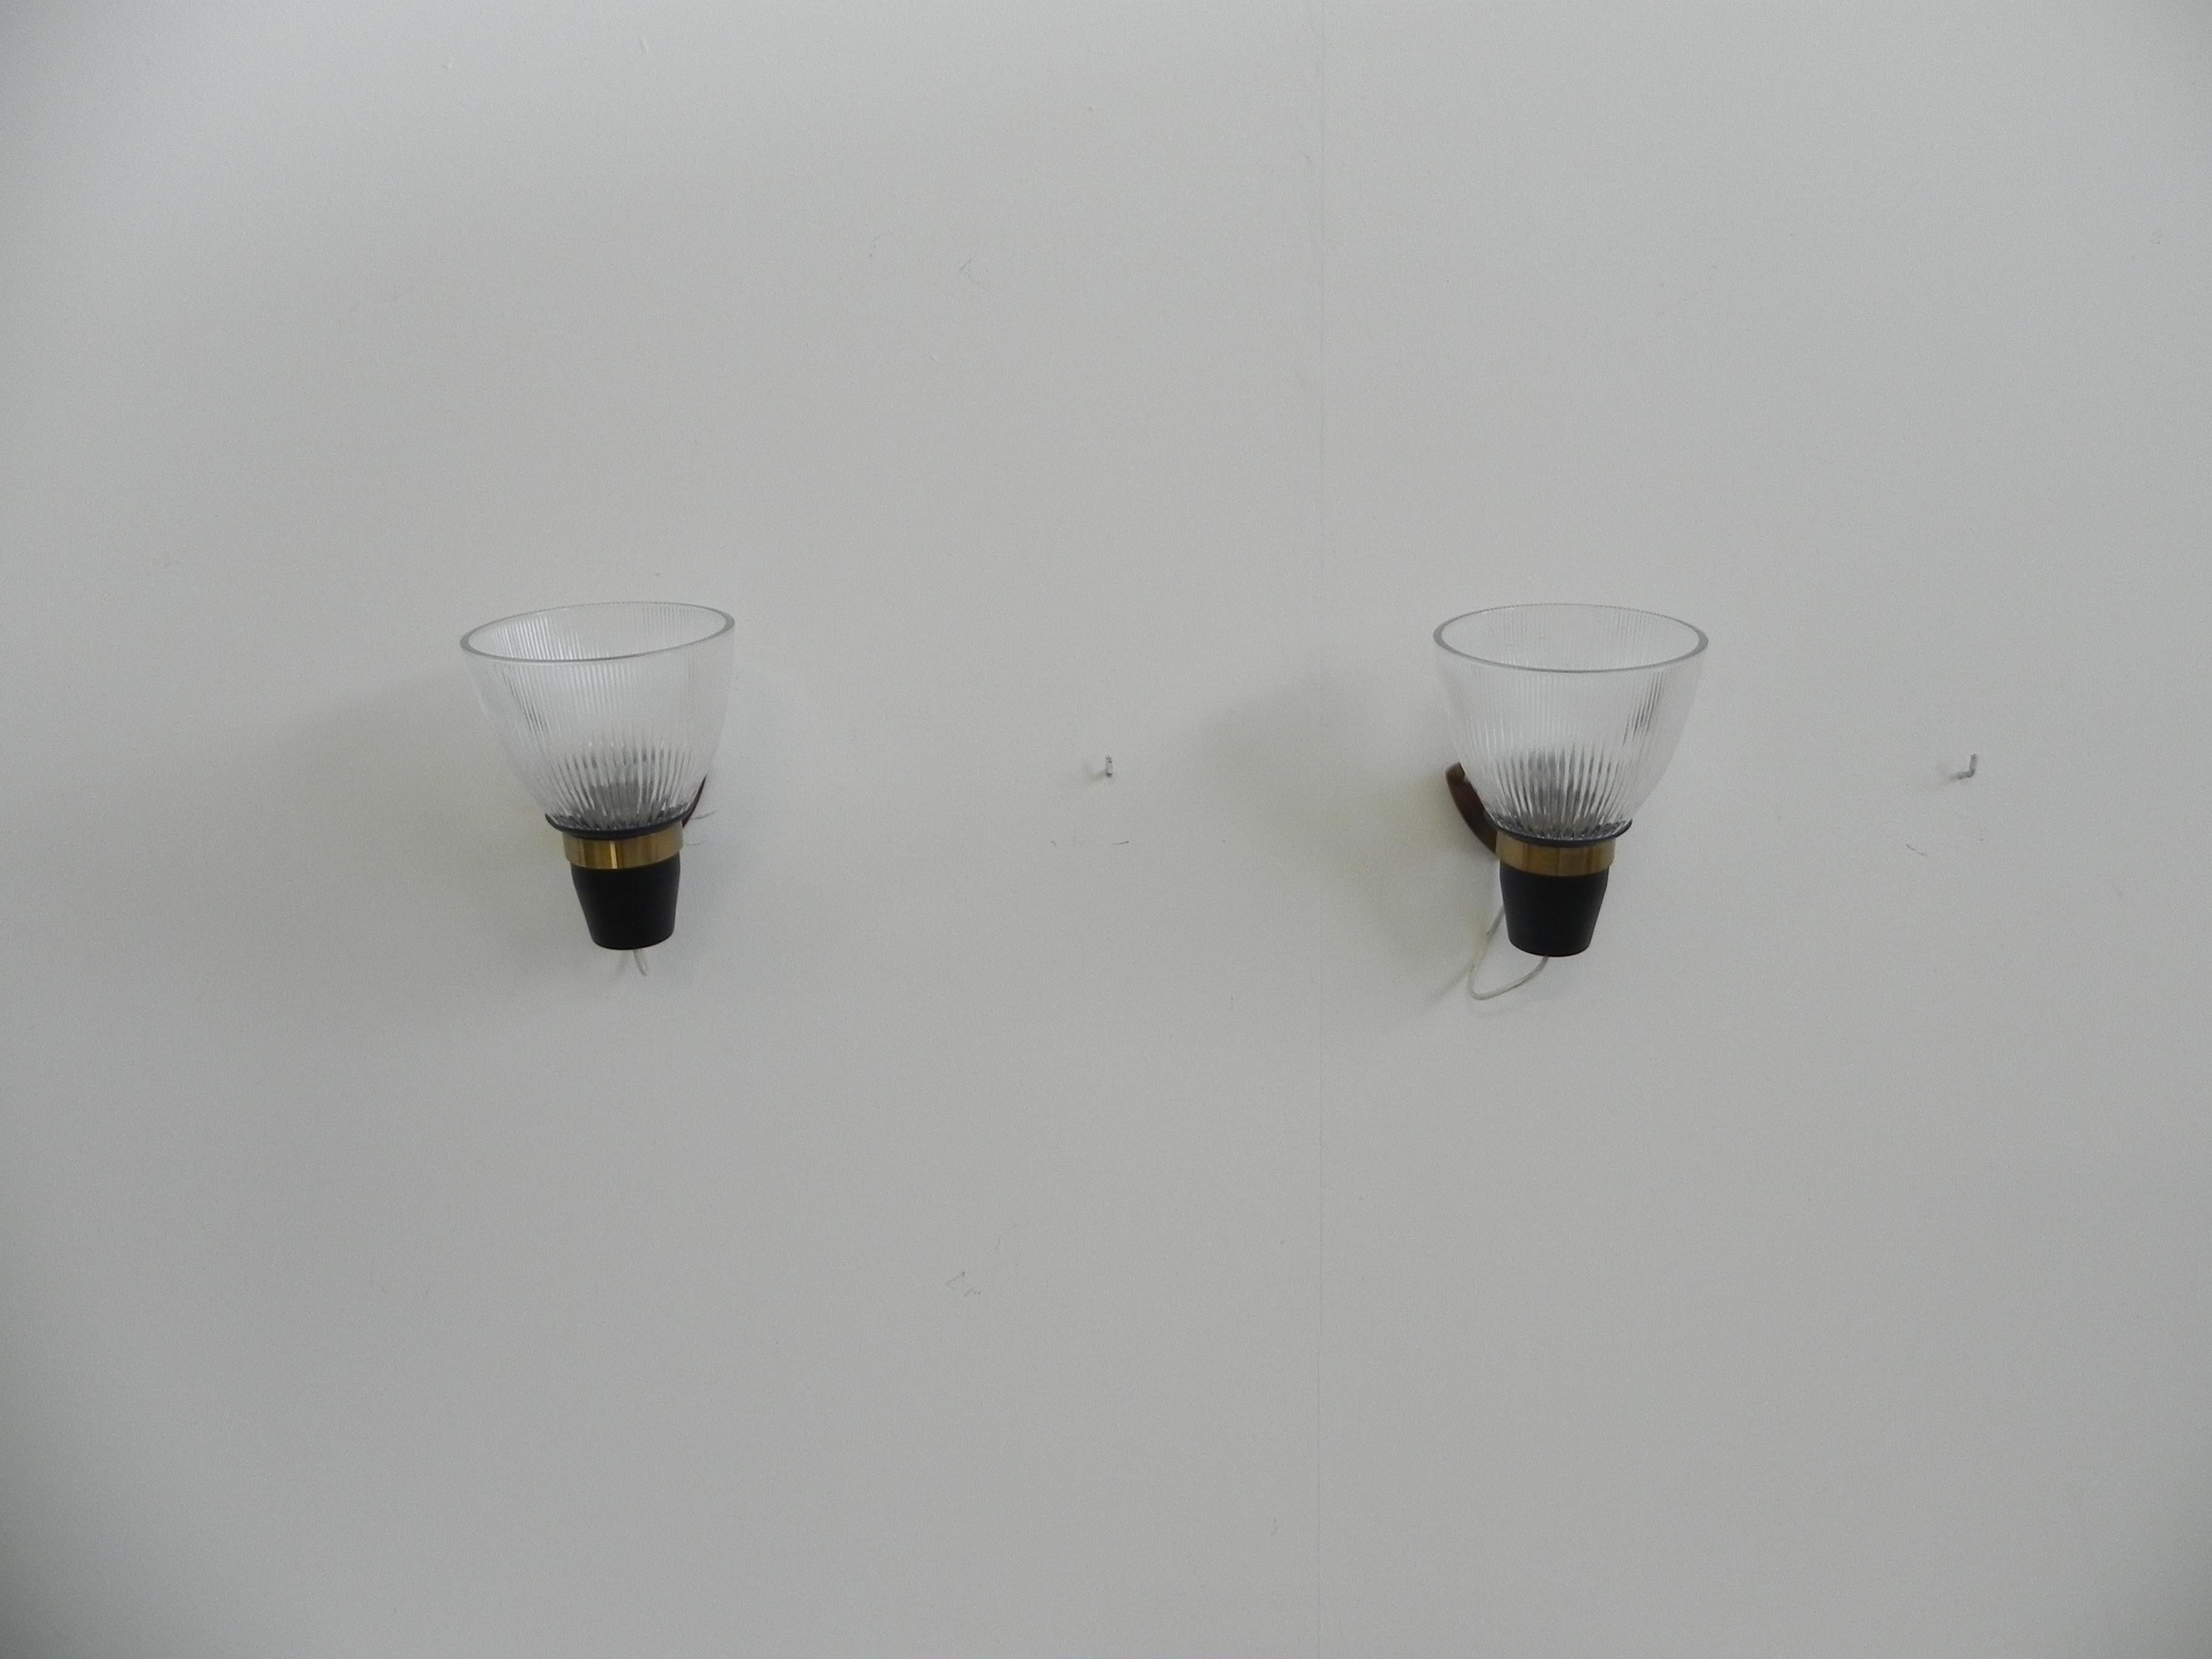 ignazio Gardella LP5-Leuchten aus den 1950er Jahren für Azucena. Diese ikonischen Wandleuchter sind aus opalem Pressglas, schwarz lackiertem Metall und Messing gefertigt. Einige der Lampen tragen den Azucena-Herstellerstempel auf der Rückseite der